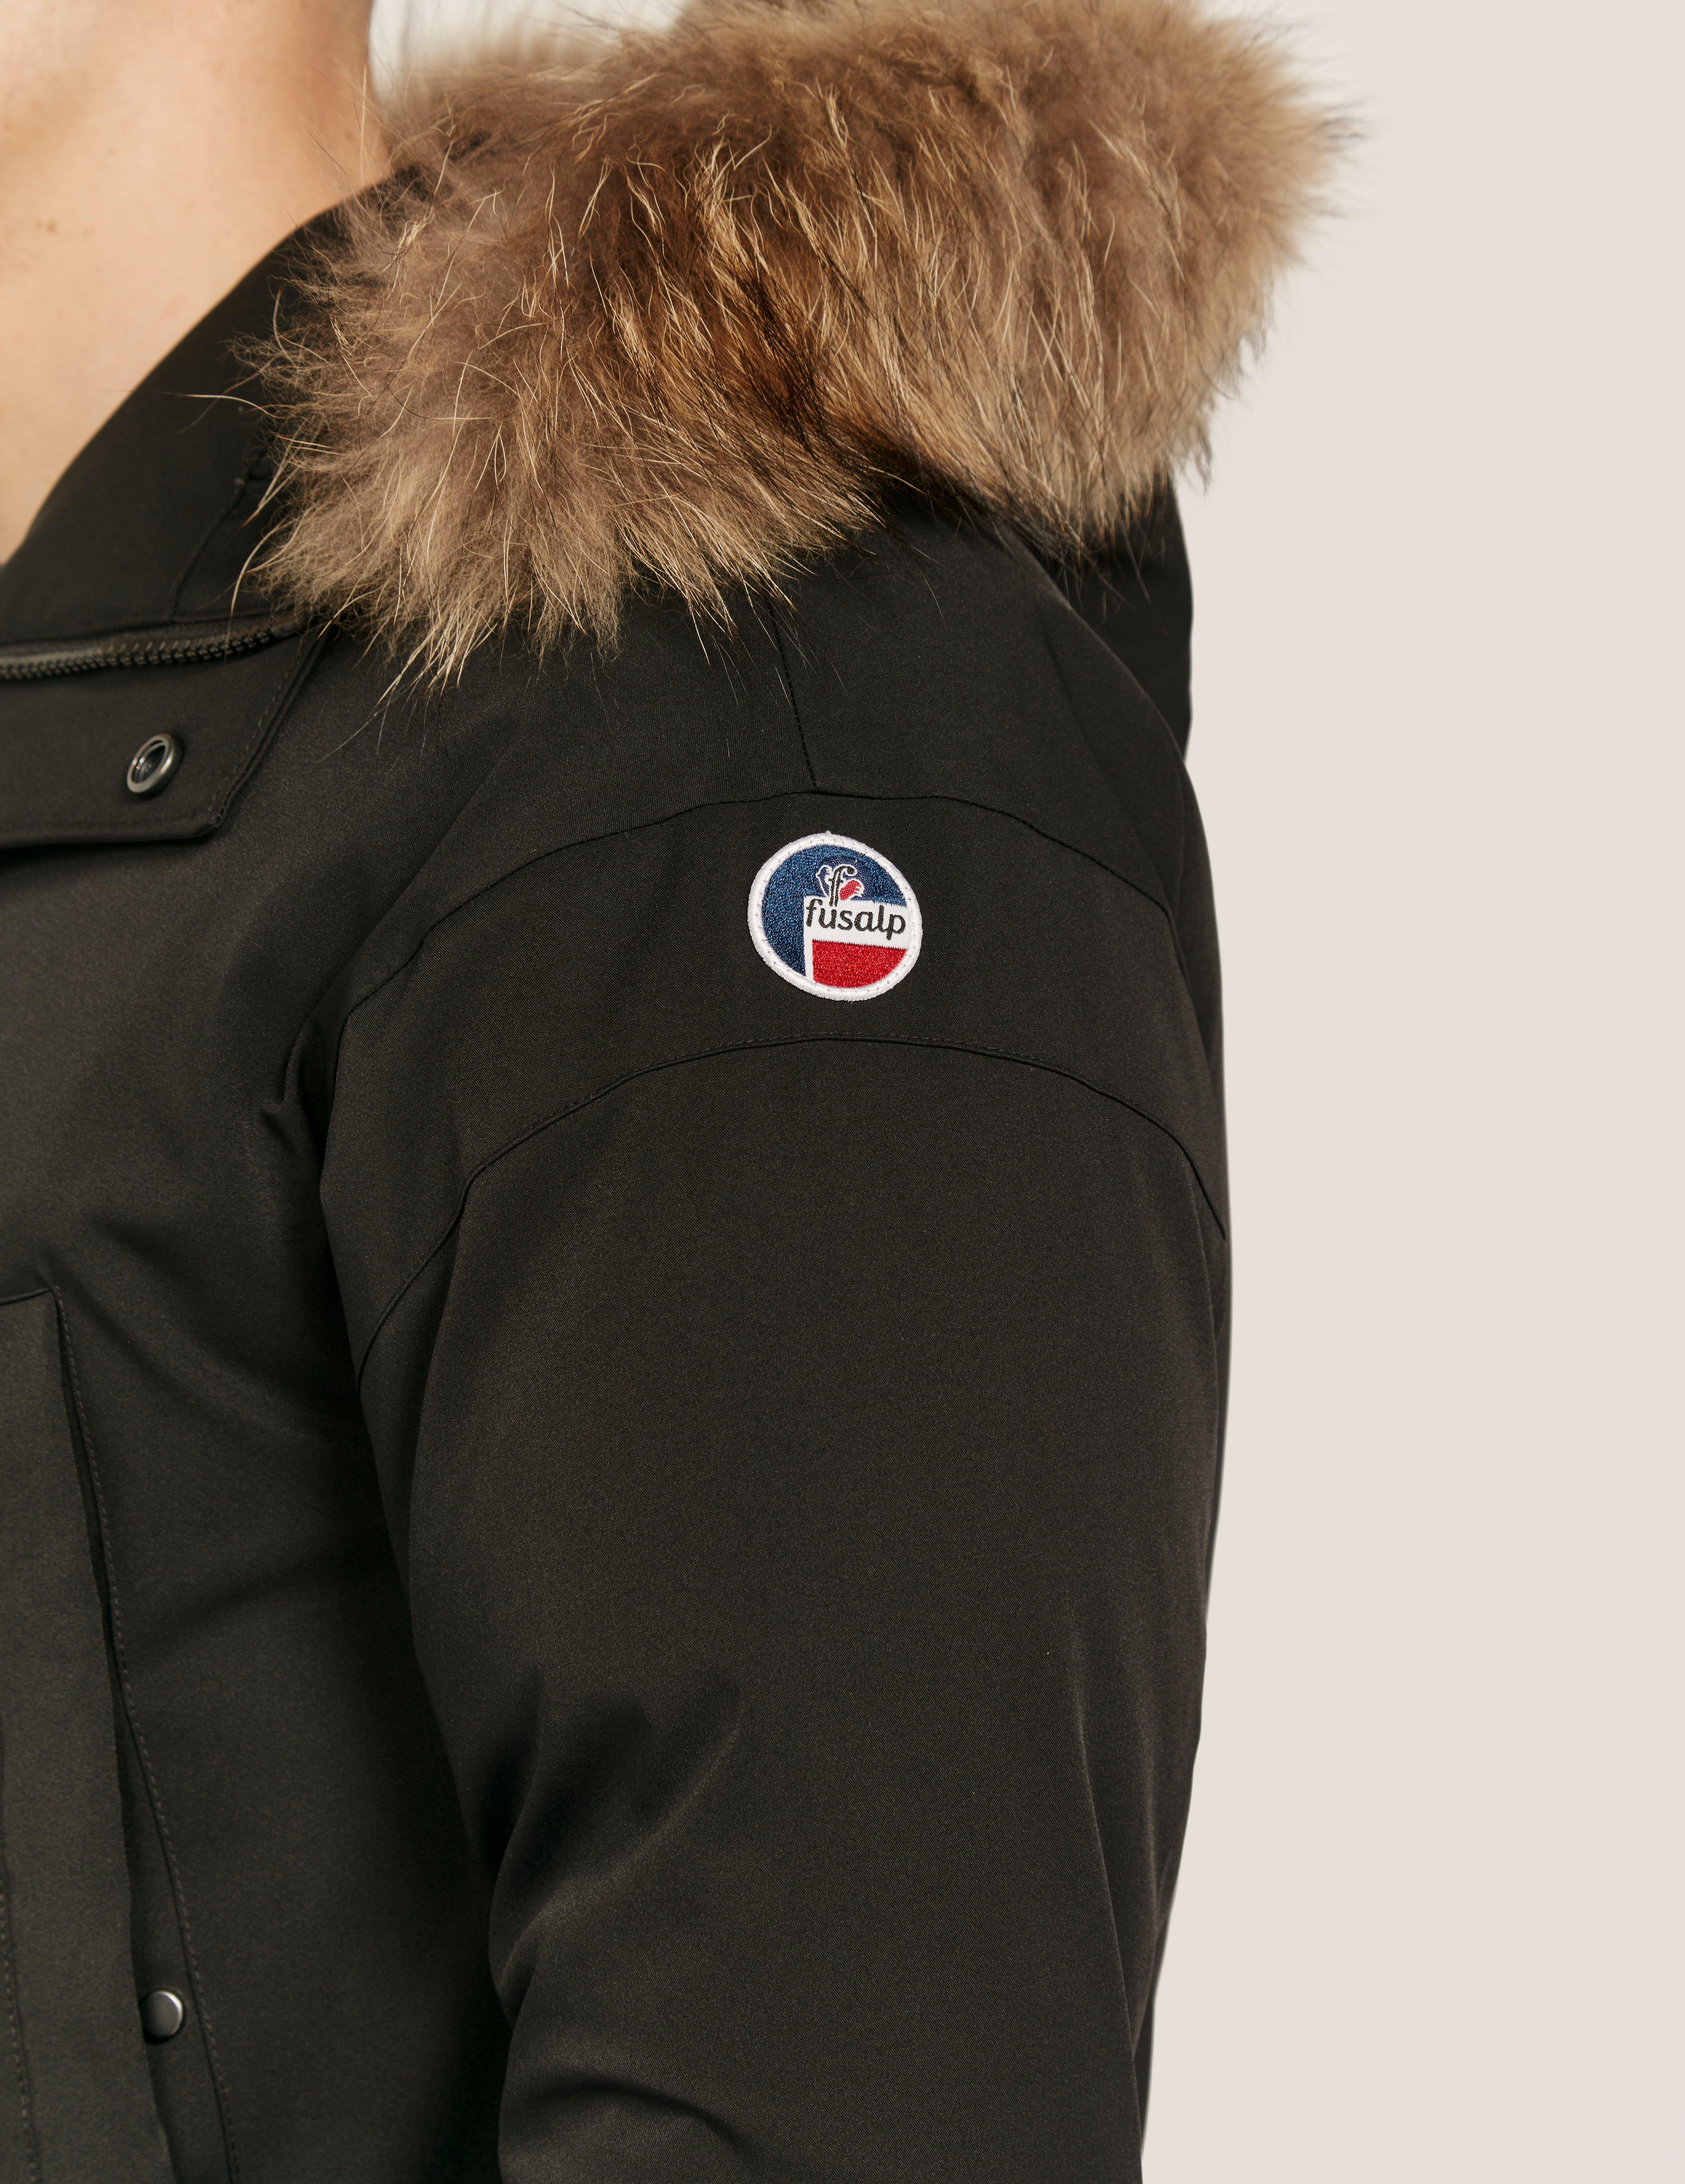 Fusalp Fur Parka Jacket in Black for Men - Lyst